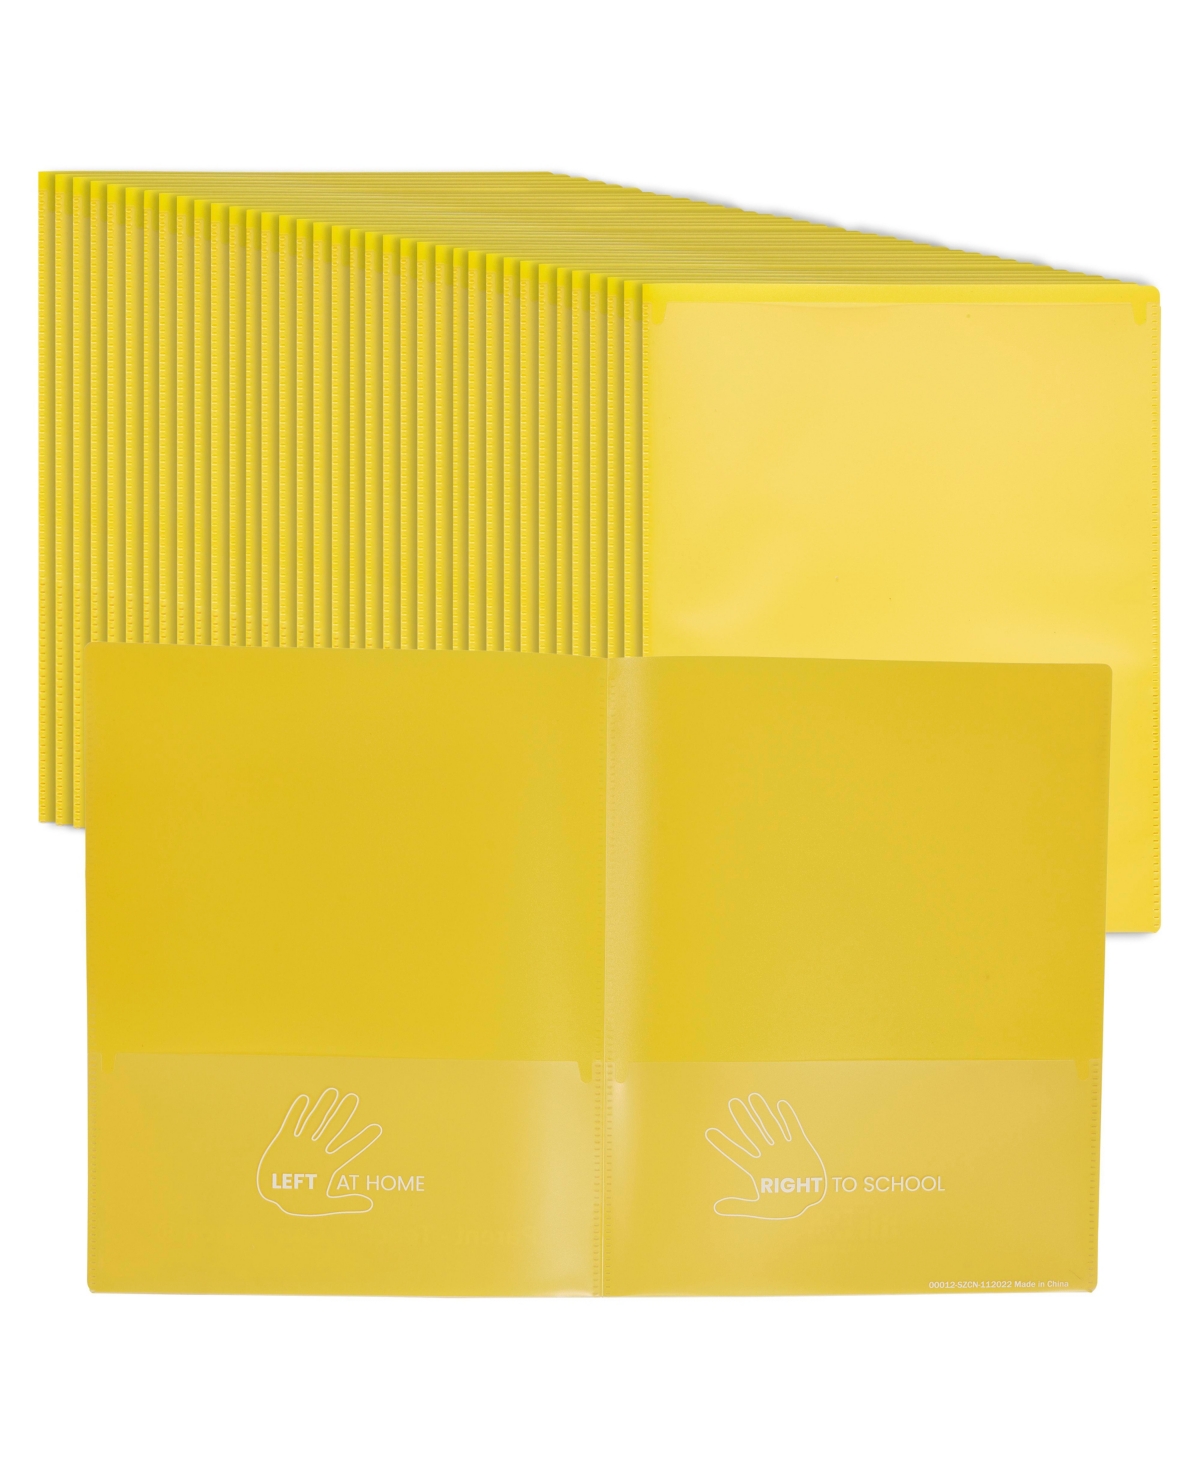 2-Pocket Parent-Teacher Classroom Communication Folder, School Supplies, Assorted, 36-Piece - Yellow